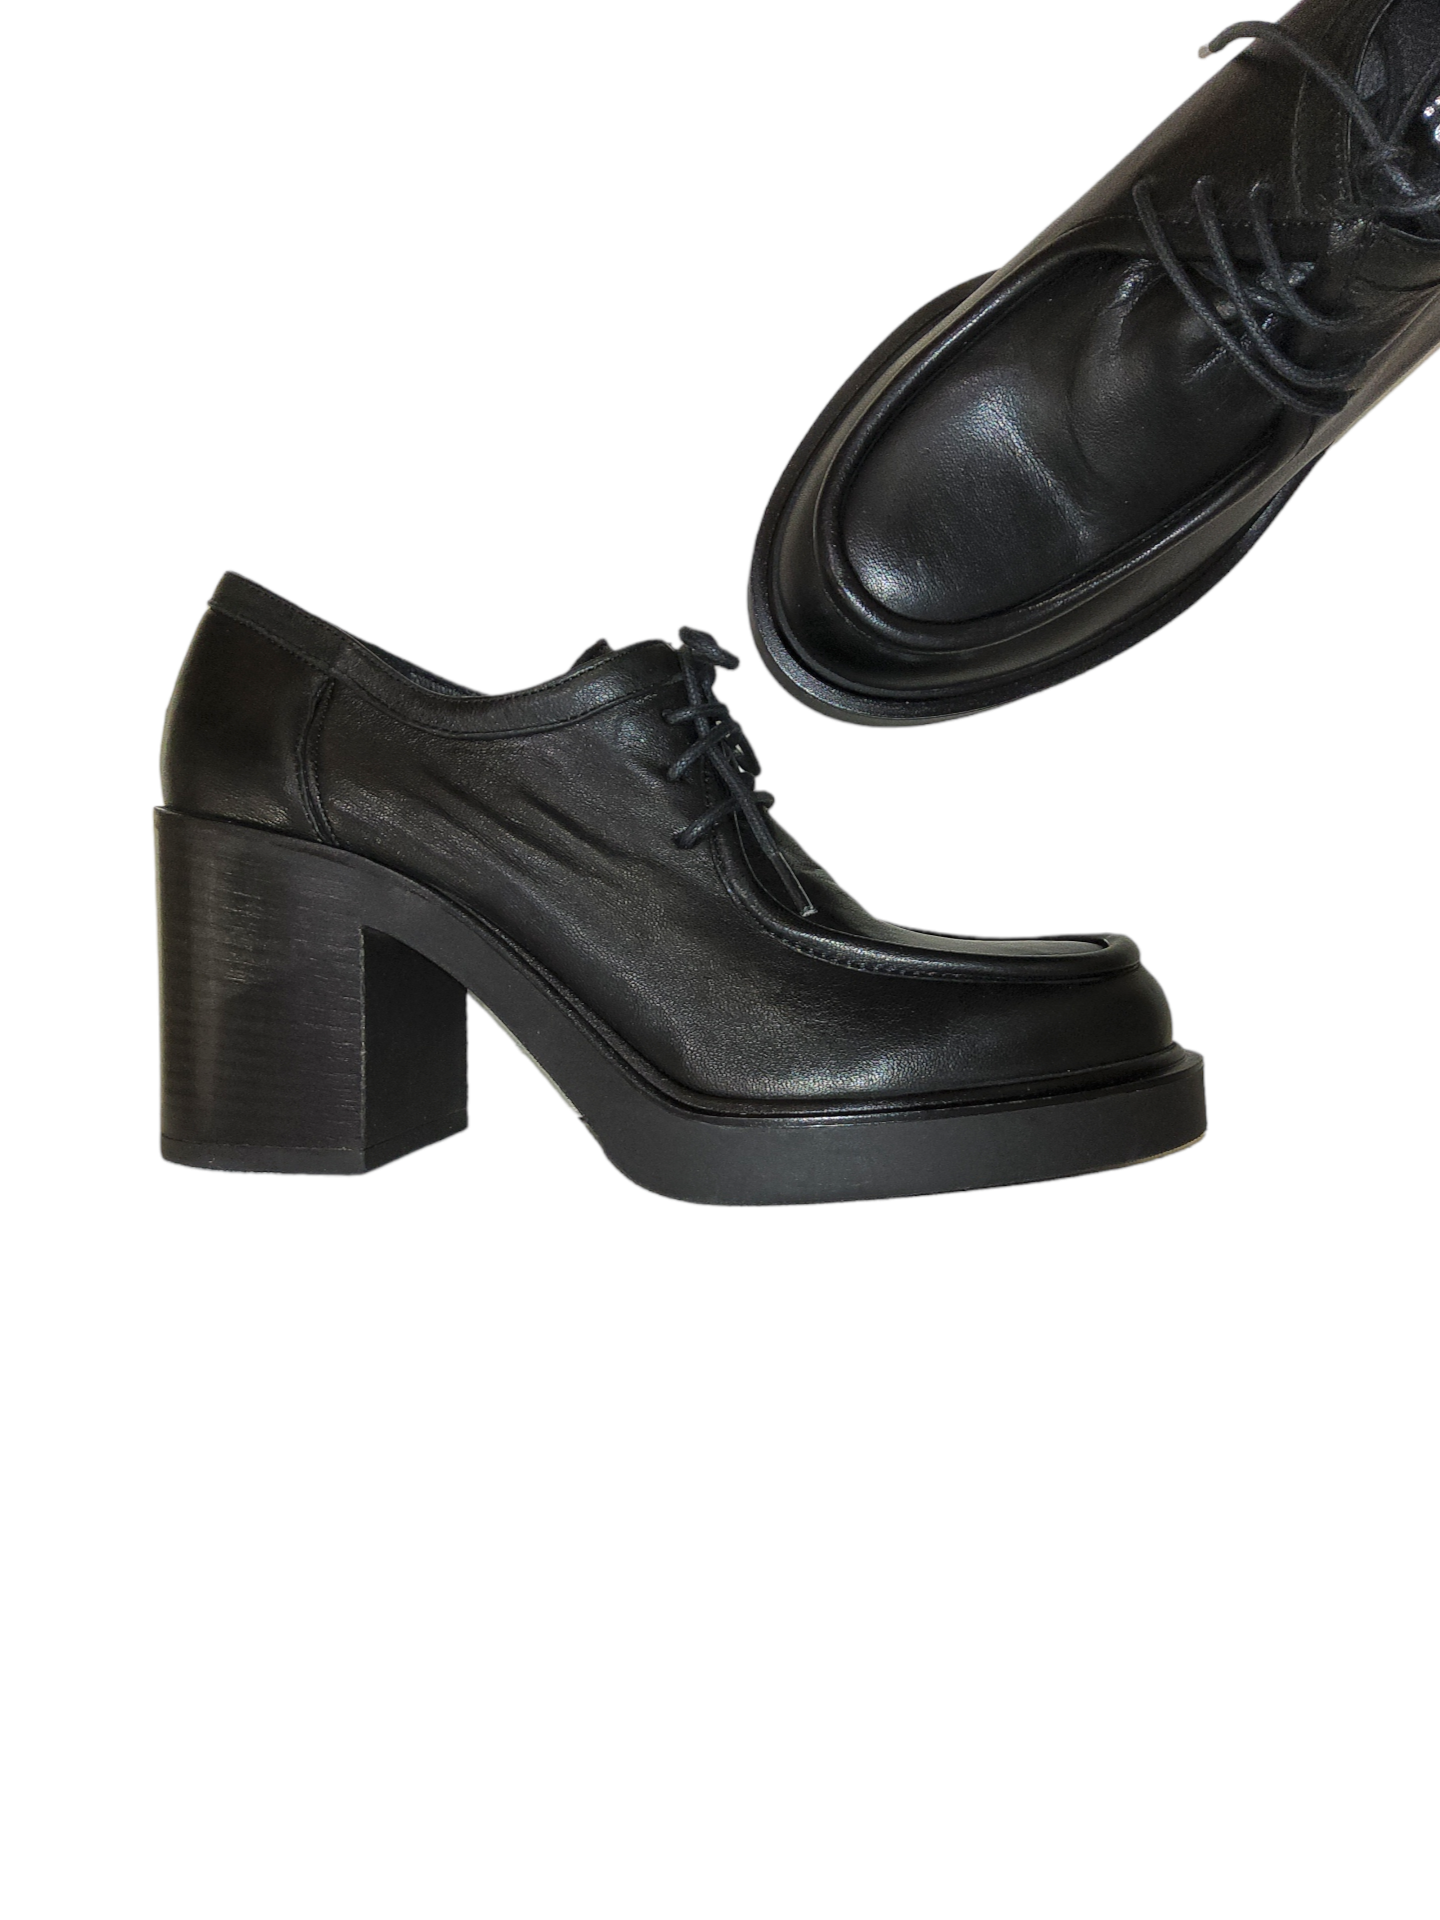 Black leather platform shoe